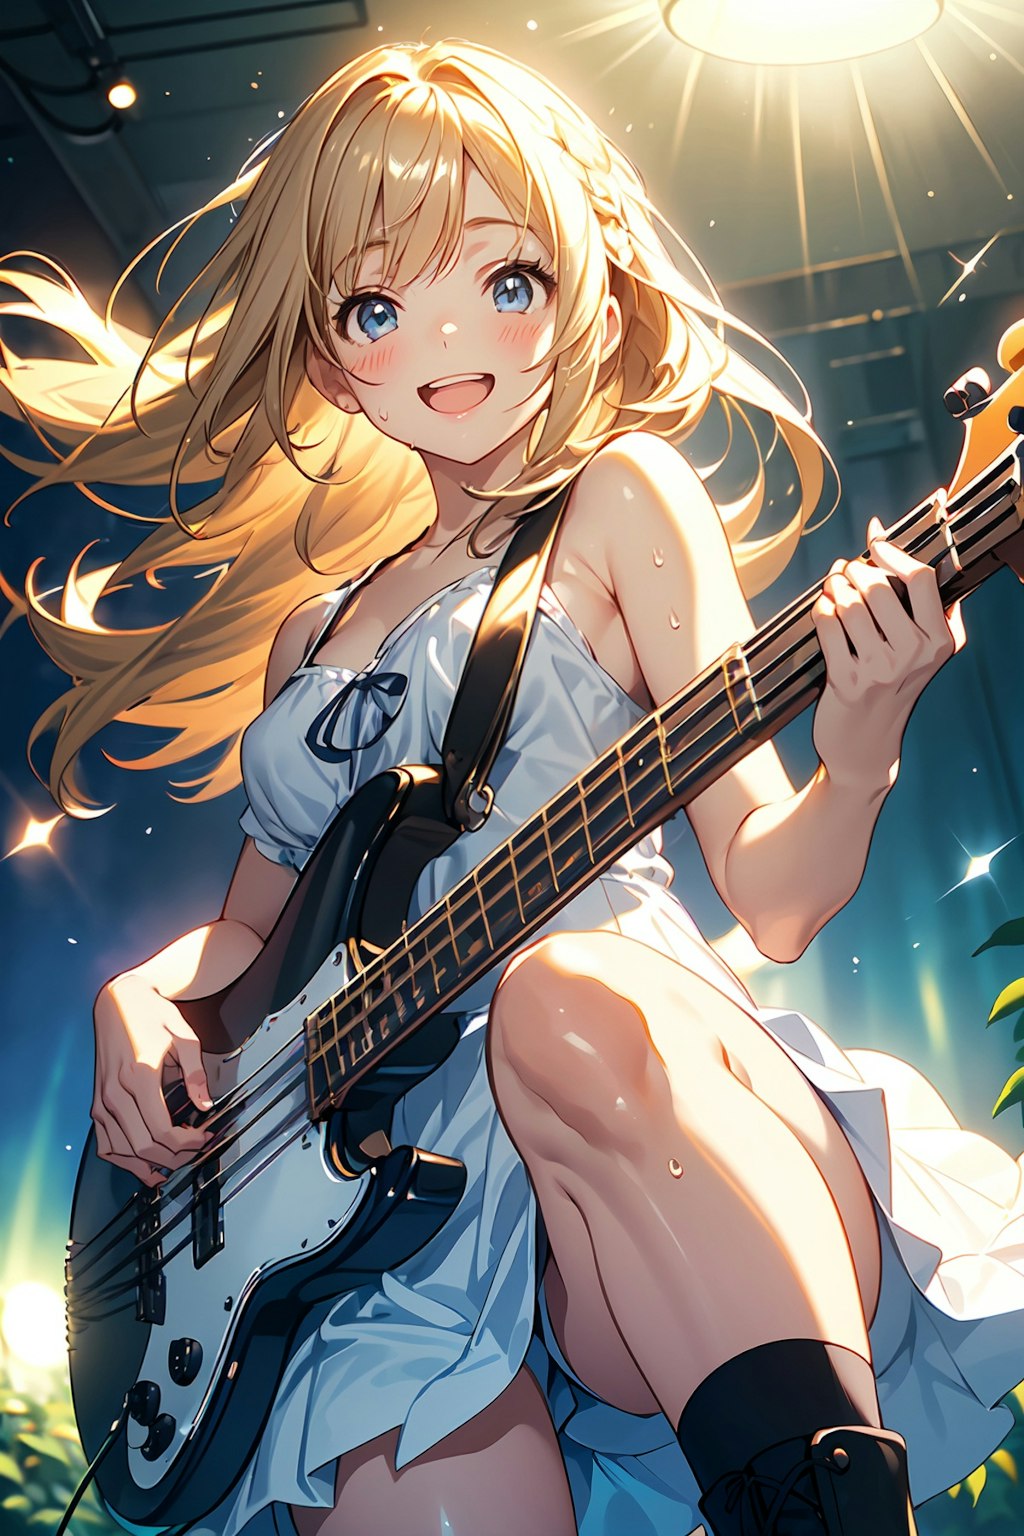 Bass player